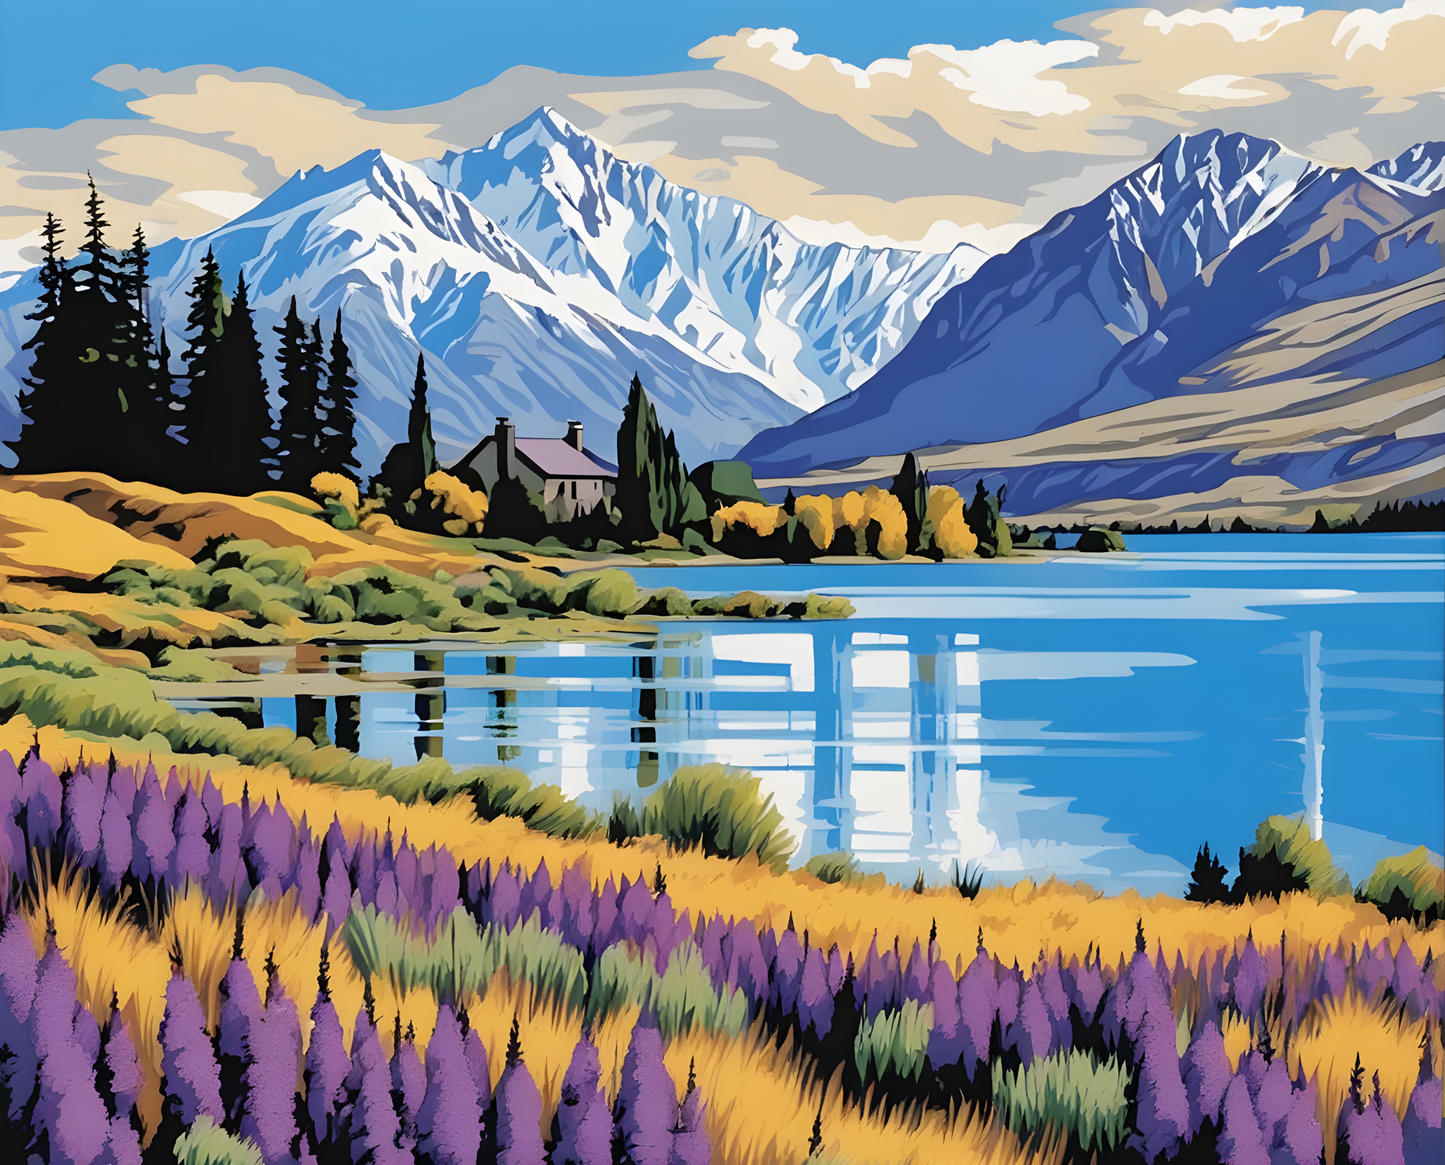 Amazing Places OD (151) - Lake Tekapo, New Zealand - Van-Go Paint-By-Number Kit